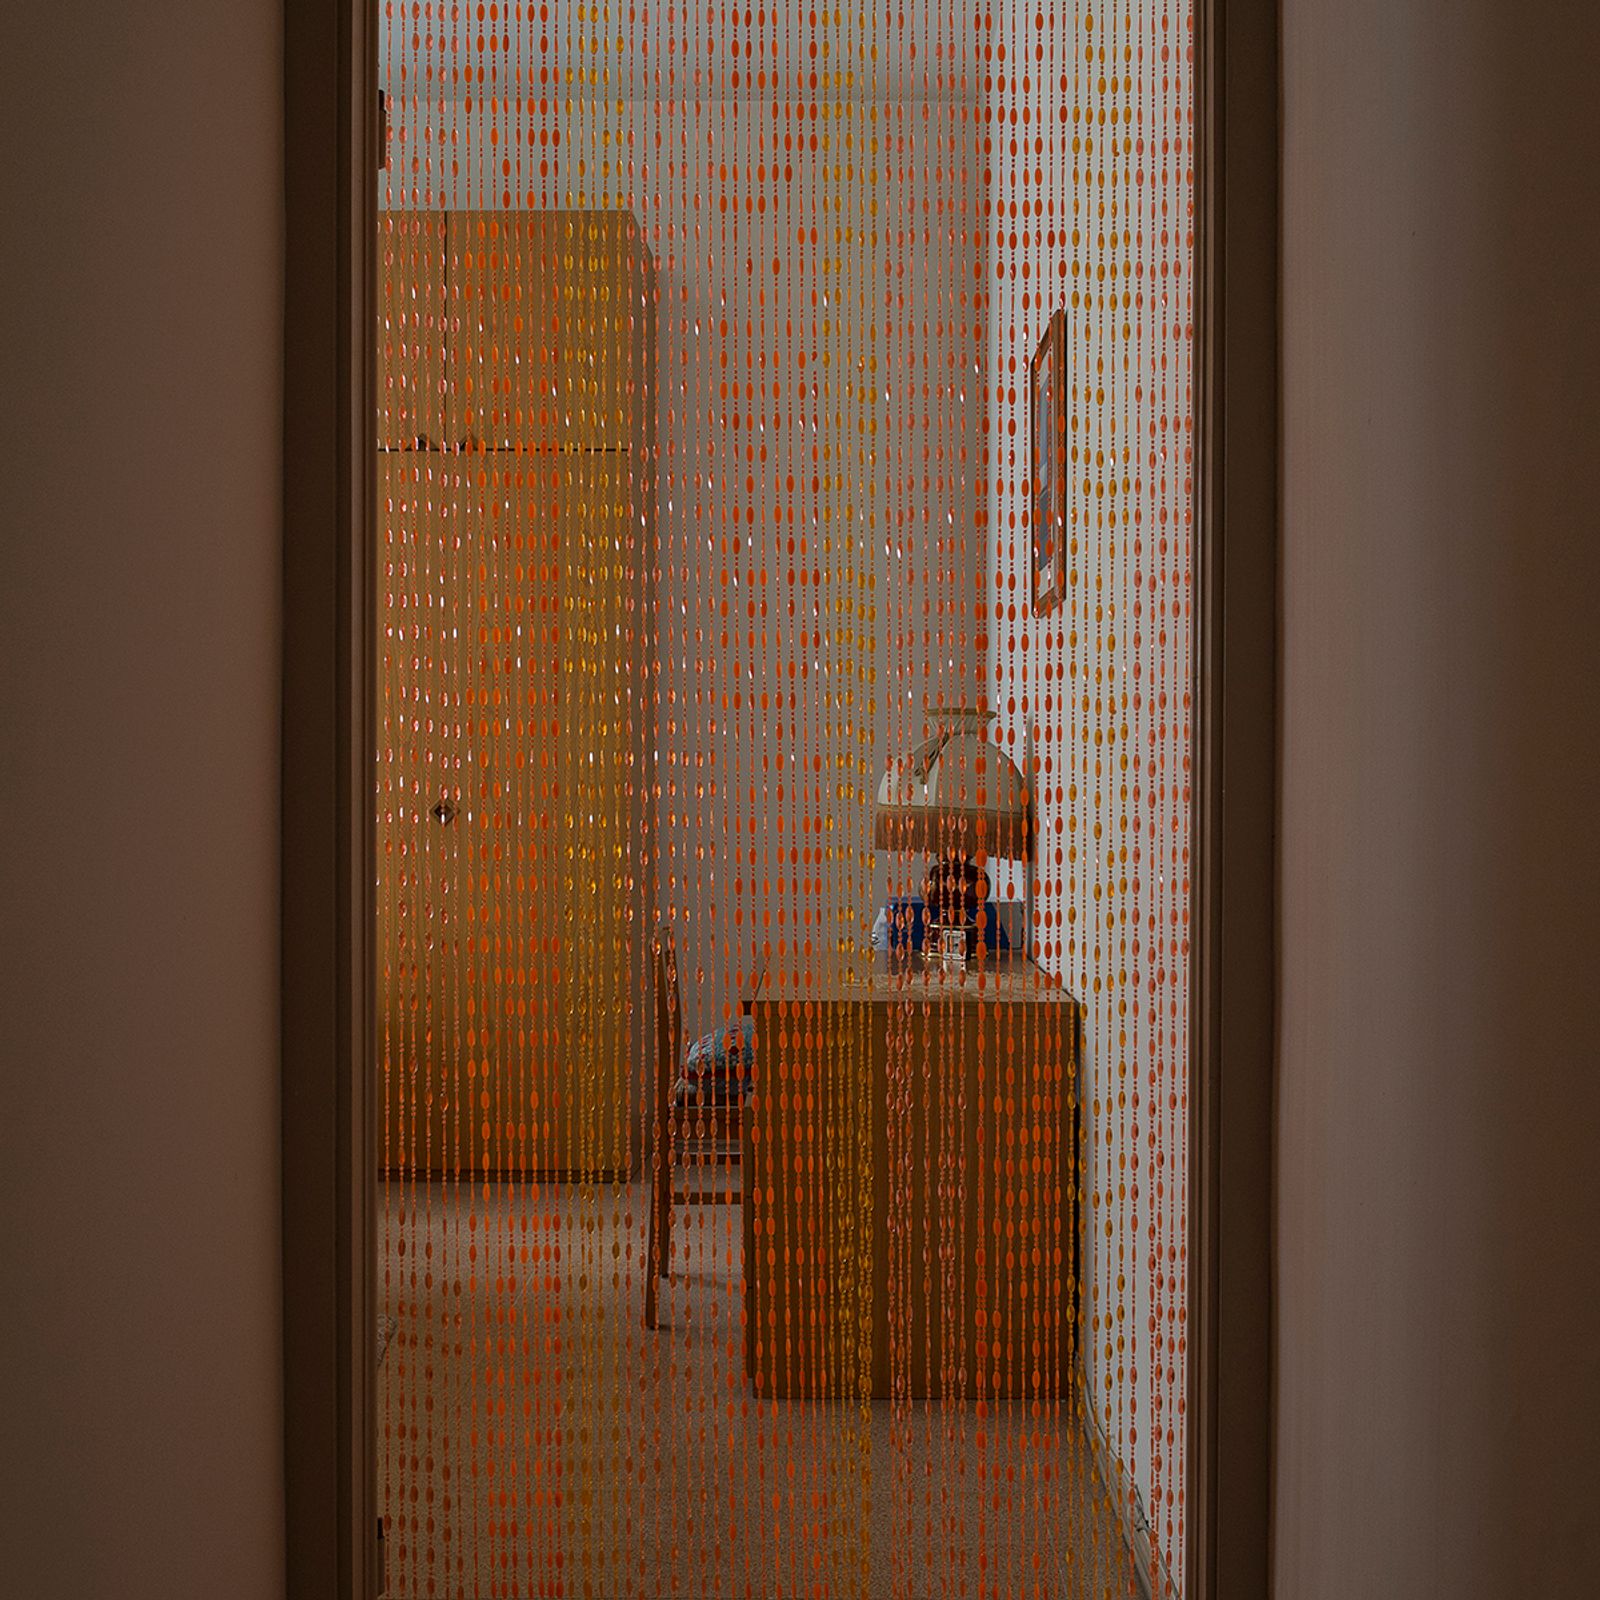 © Melissa Ianniello - A corner of Roberto Tavazzi's bedroom (Foligno – Umbria).